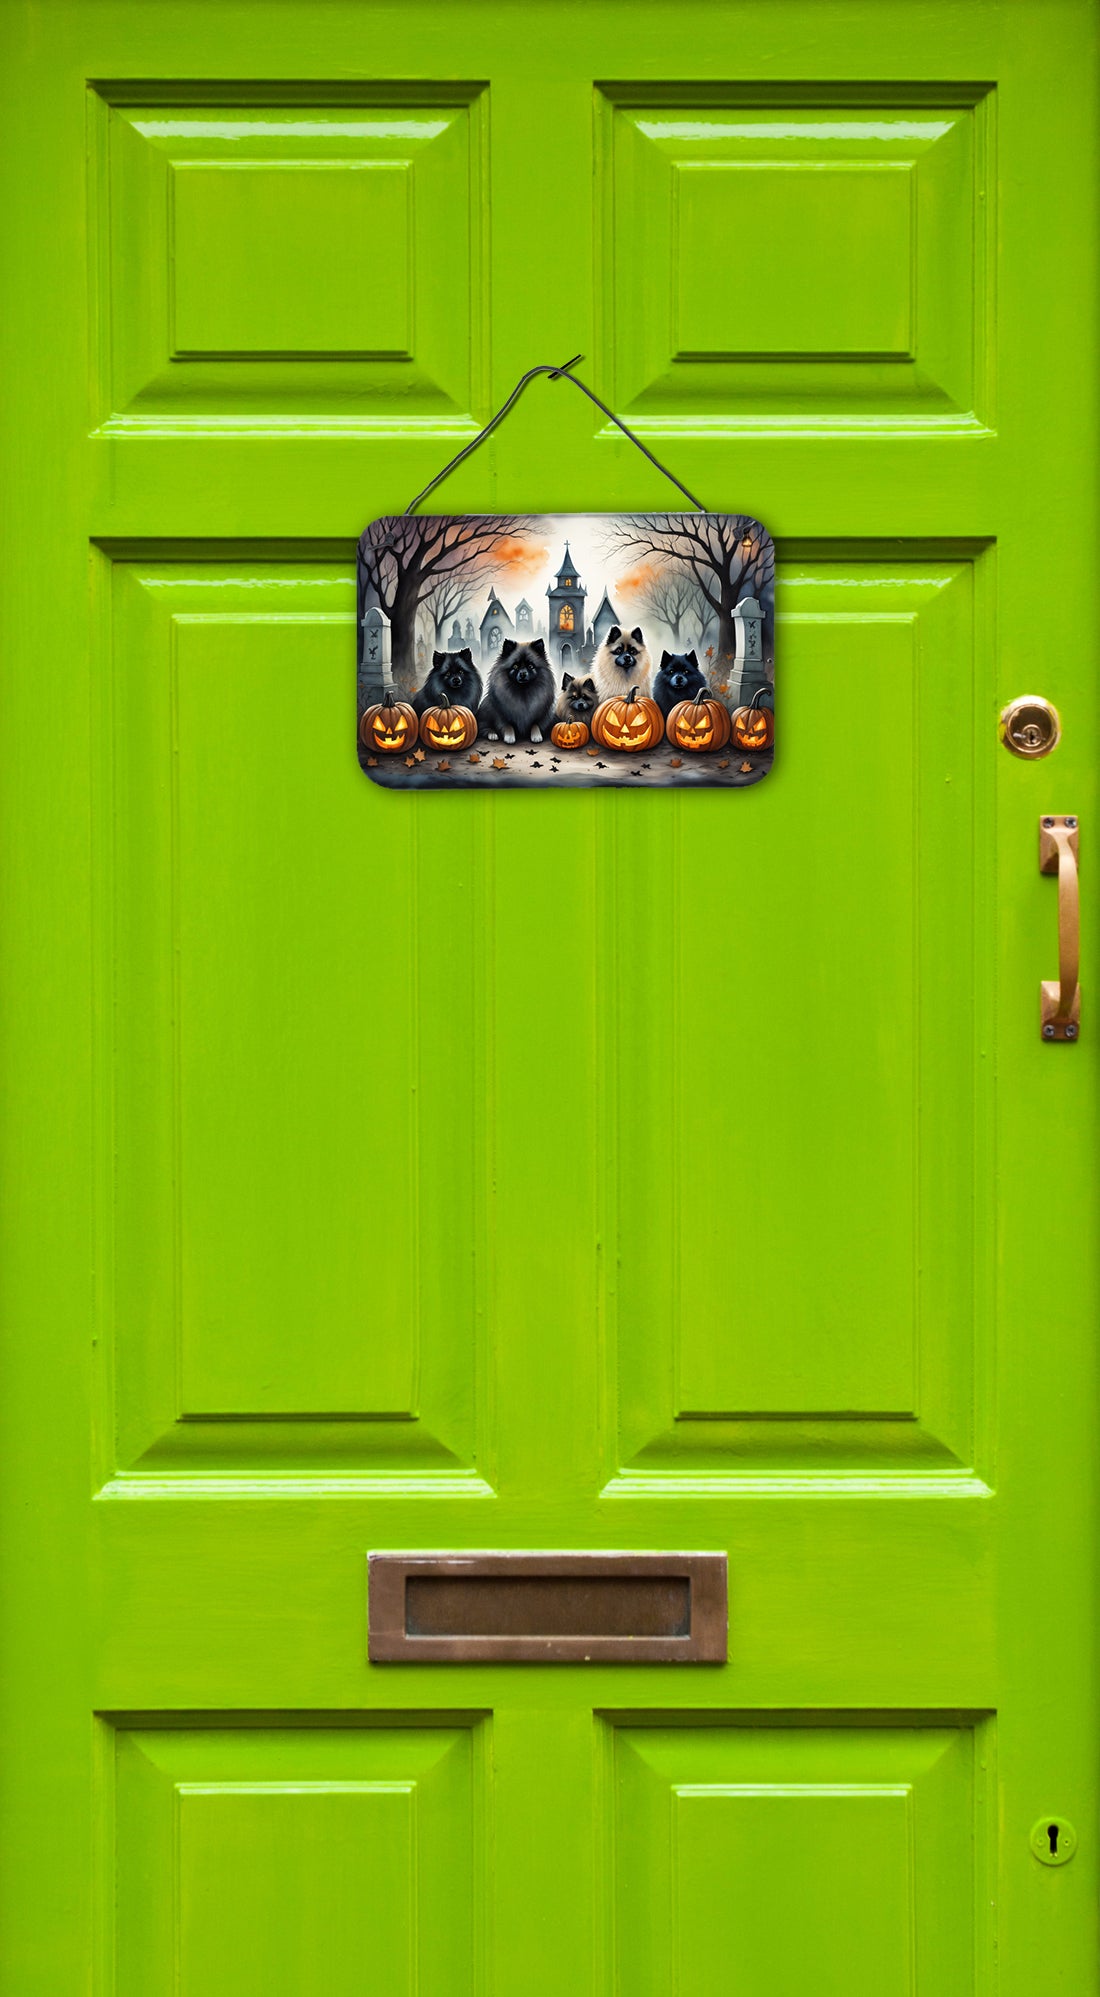 Keeshond Spooky Halloween Wall or Door Hanging Prints  the-store.com.